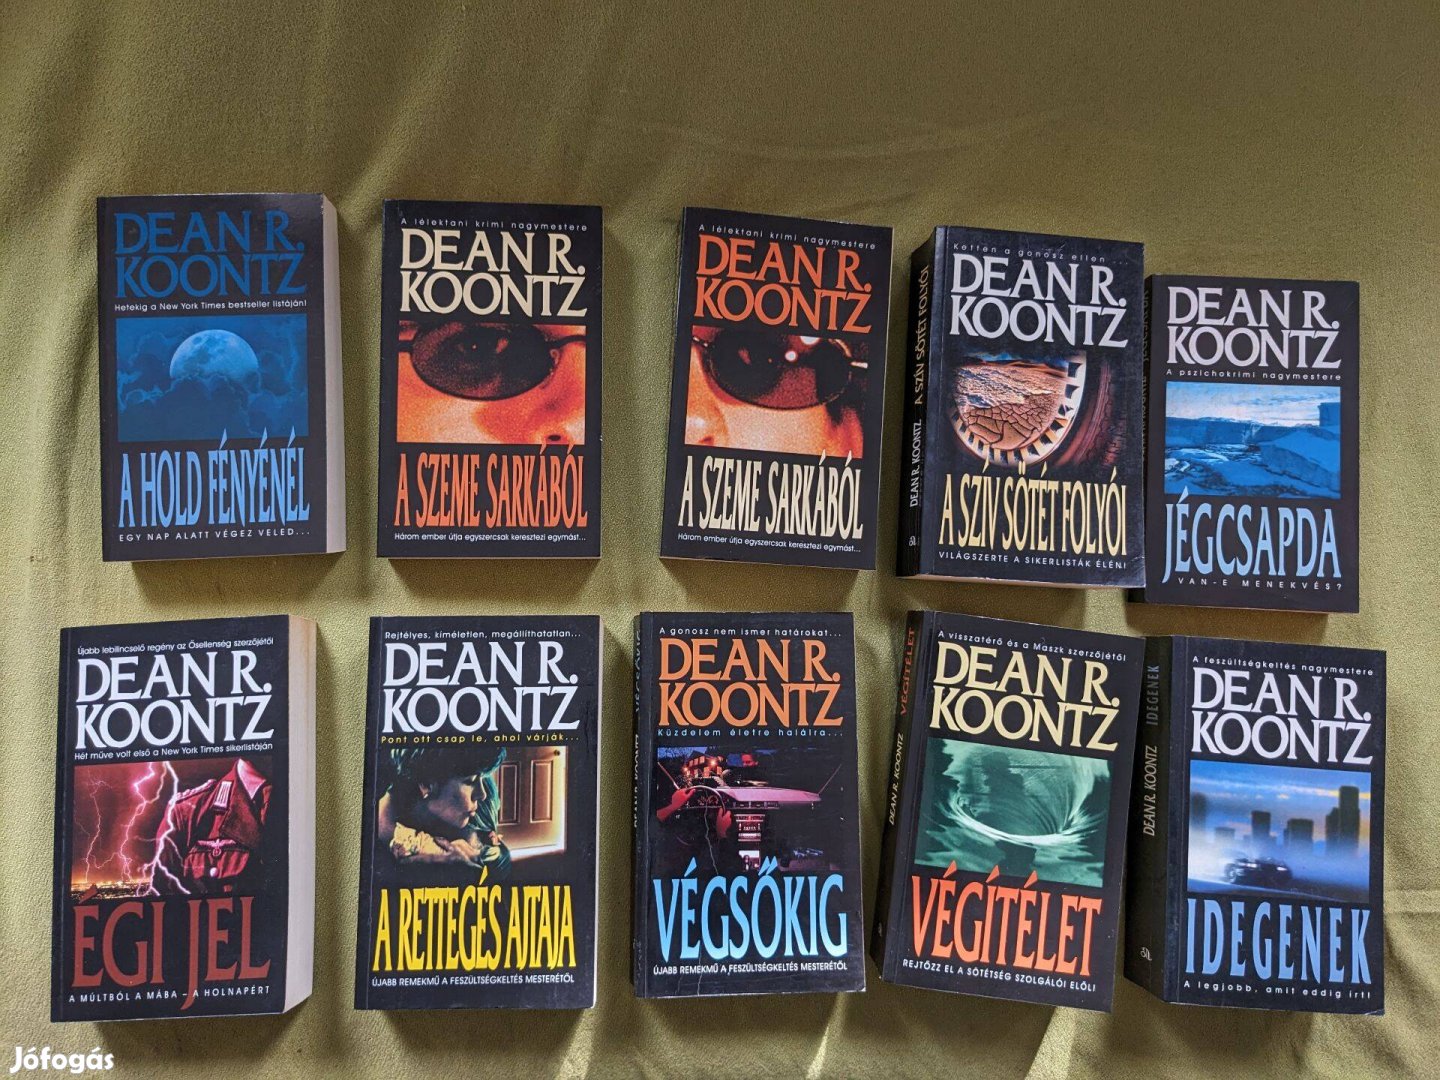 Eladó Dean Koontz könyvek (A hold fényénél, A szeme sarkából, .)